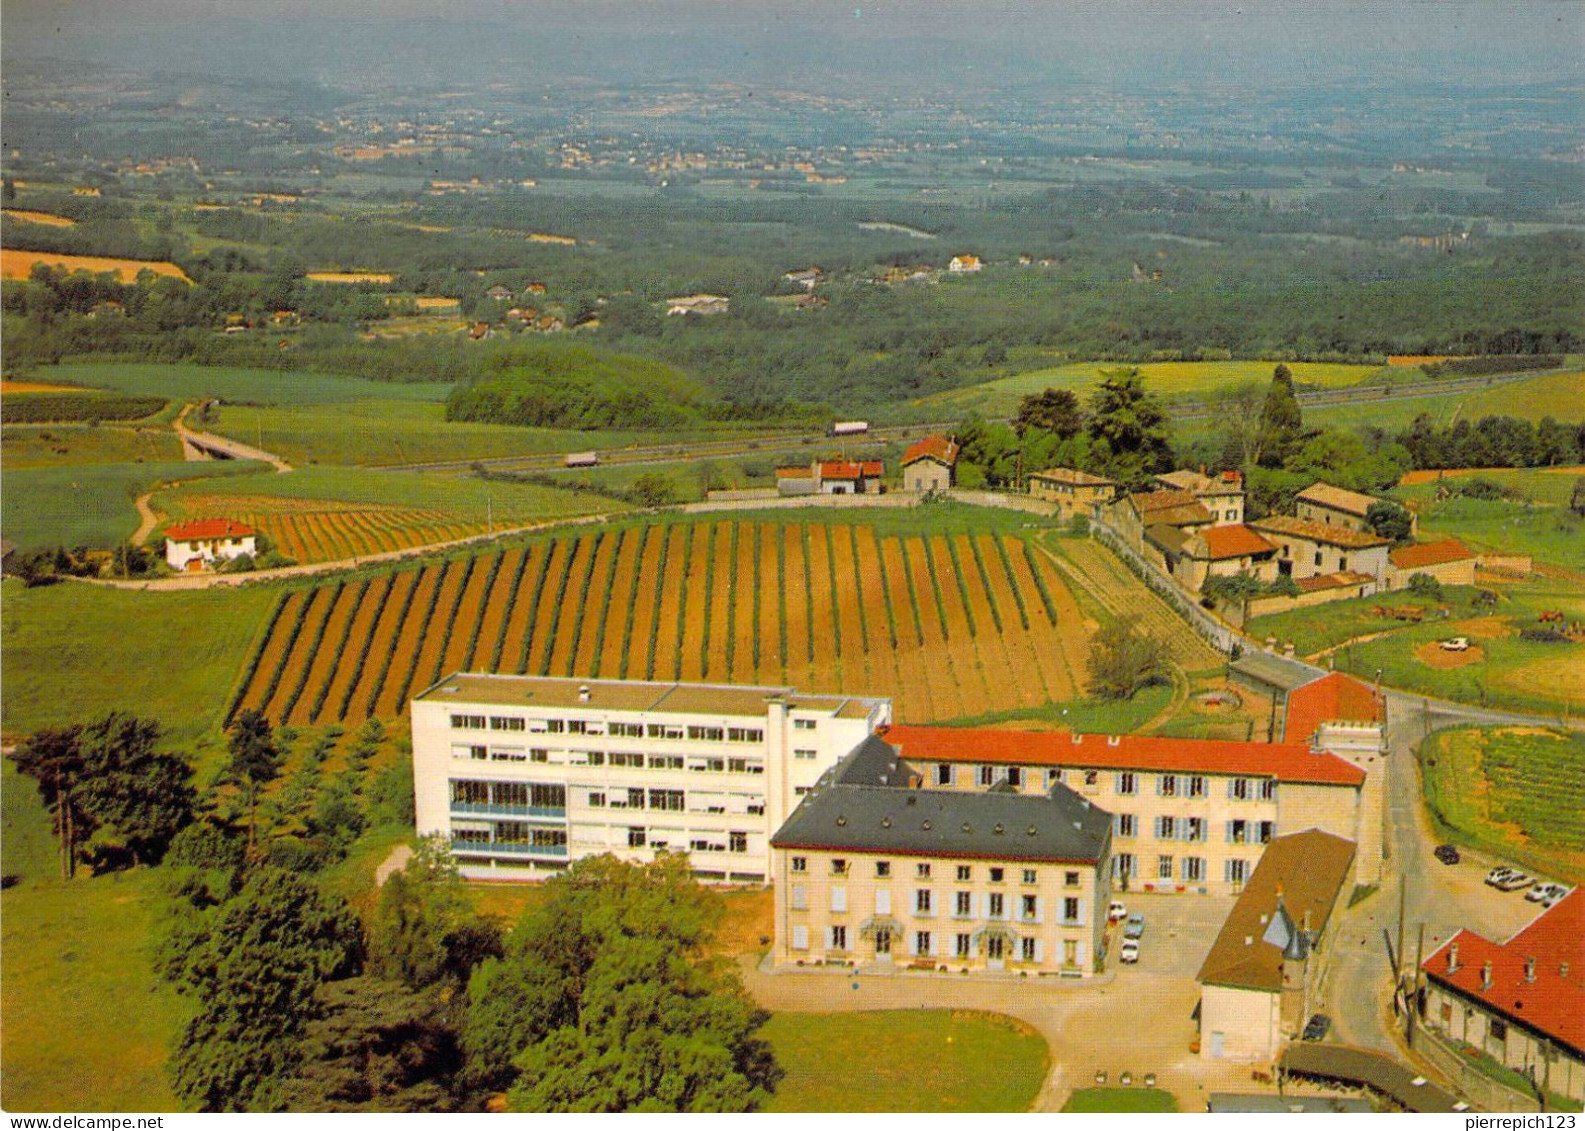 69 - Limonest - Institut Agricole De Sandar - Vue Aérienne - Limonest